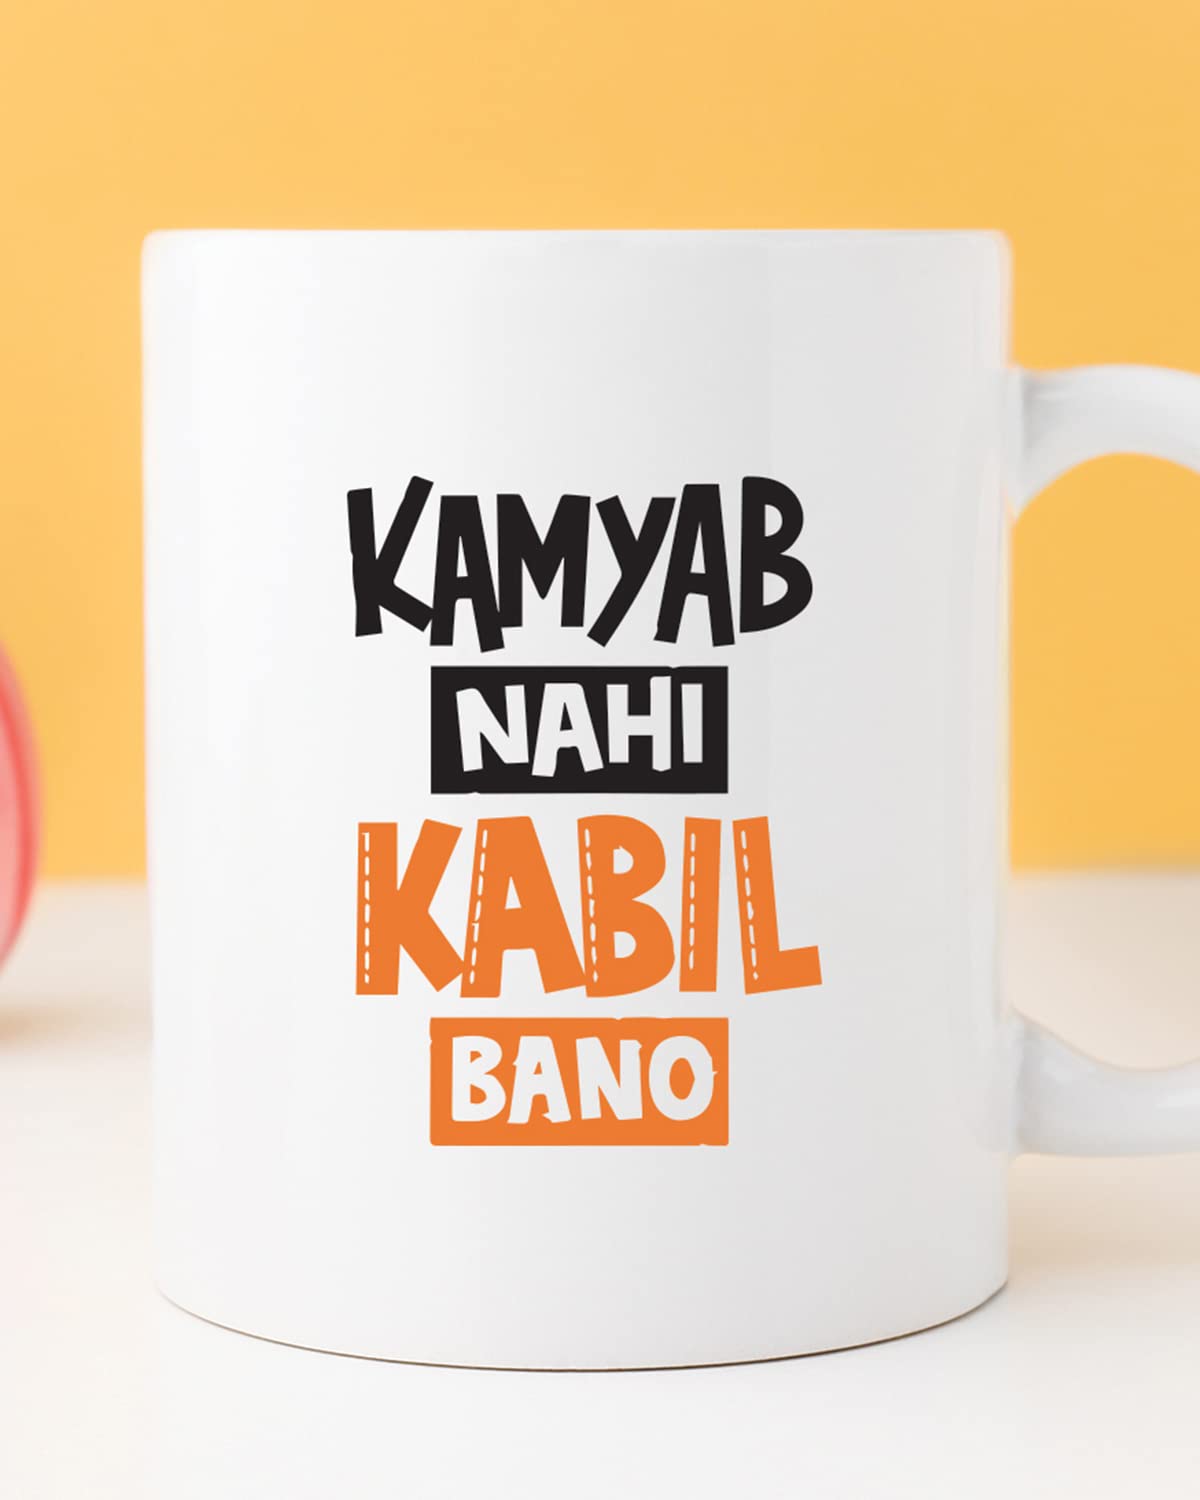 Kamyab Nahi Kabil Bano Coffee Mug - Gift for Friend, Birthday Gift, Birthday Mug, Motivational Mug, Printed with Funny & Funky Dialogues, Bollywood & Web Series Mugs, Funny Mugs for Him & Her